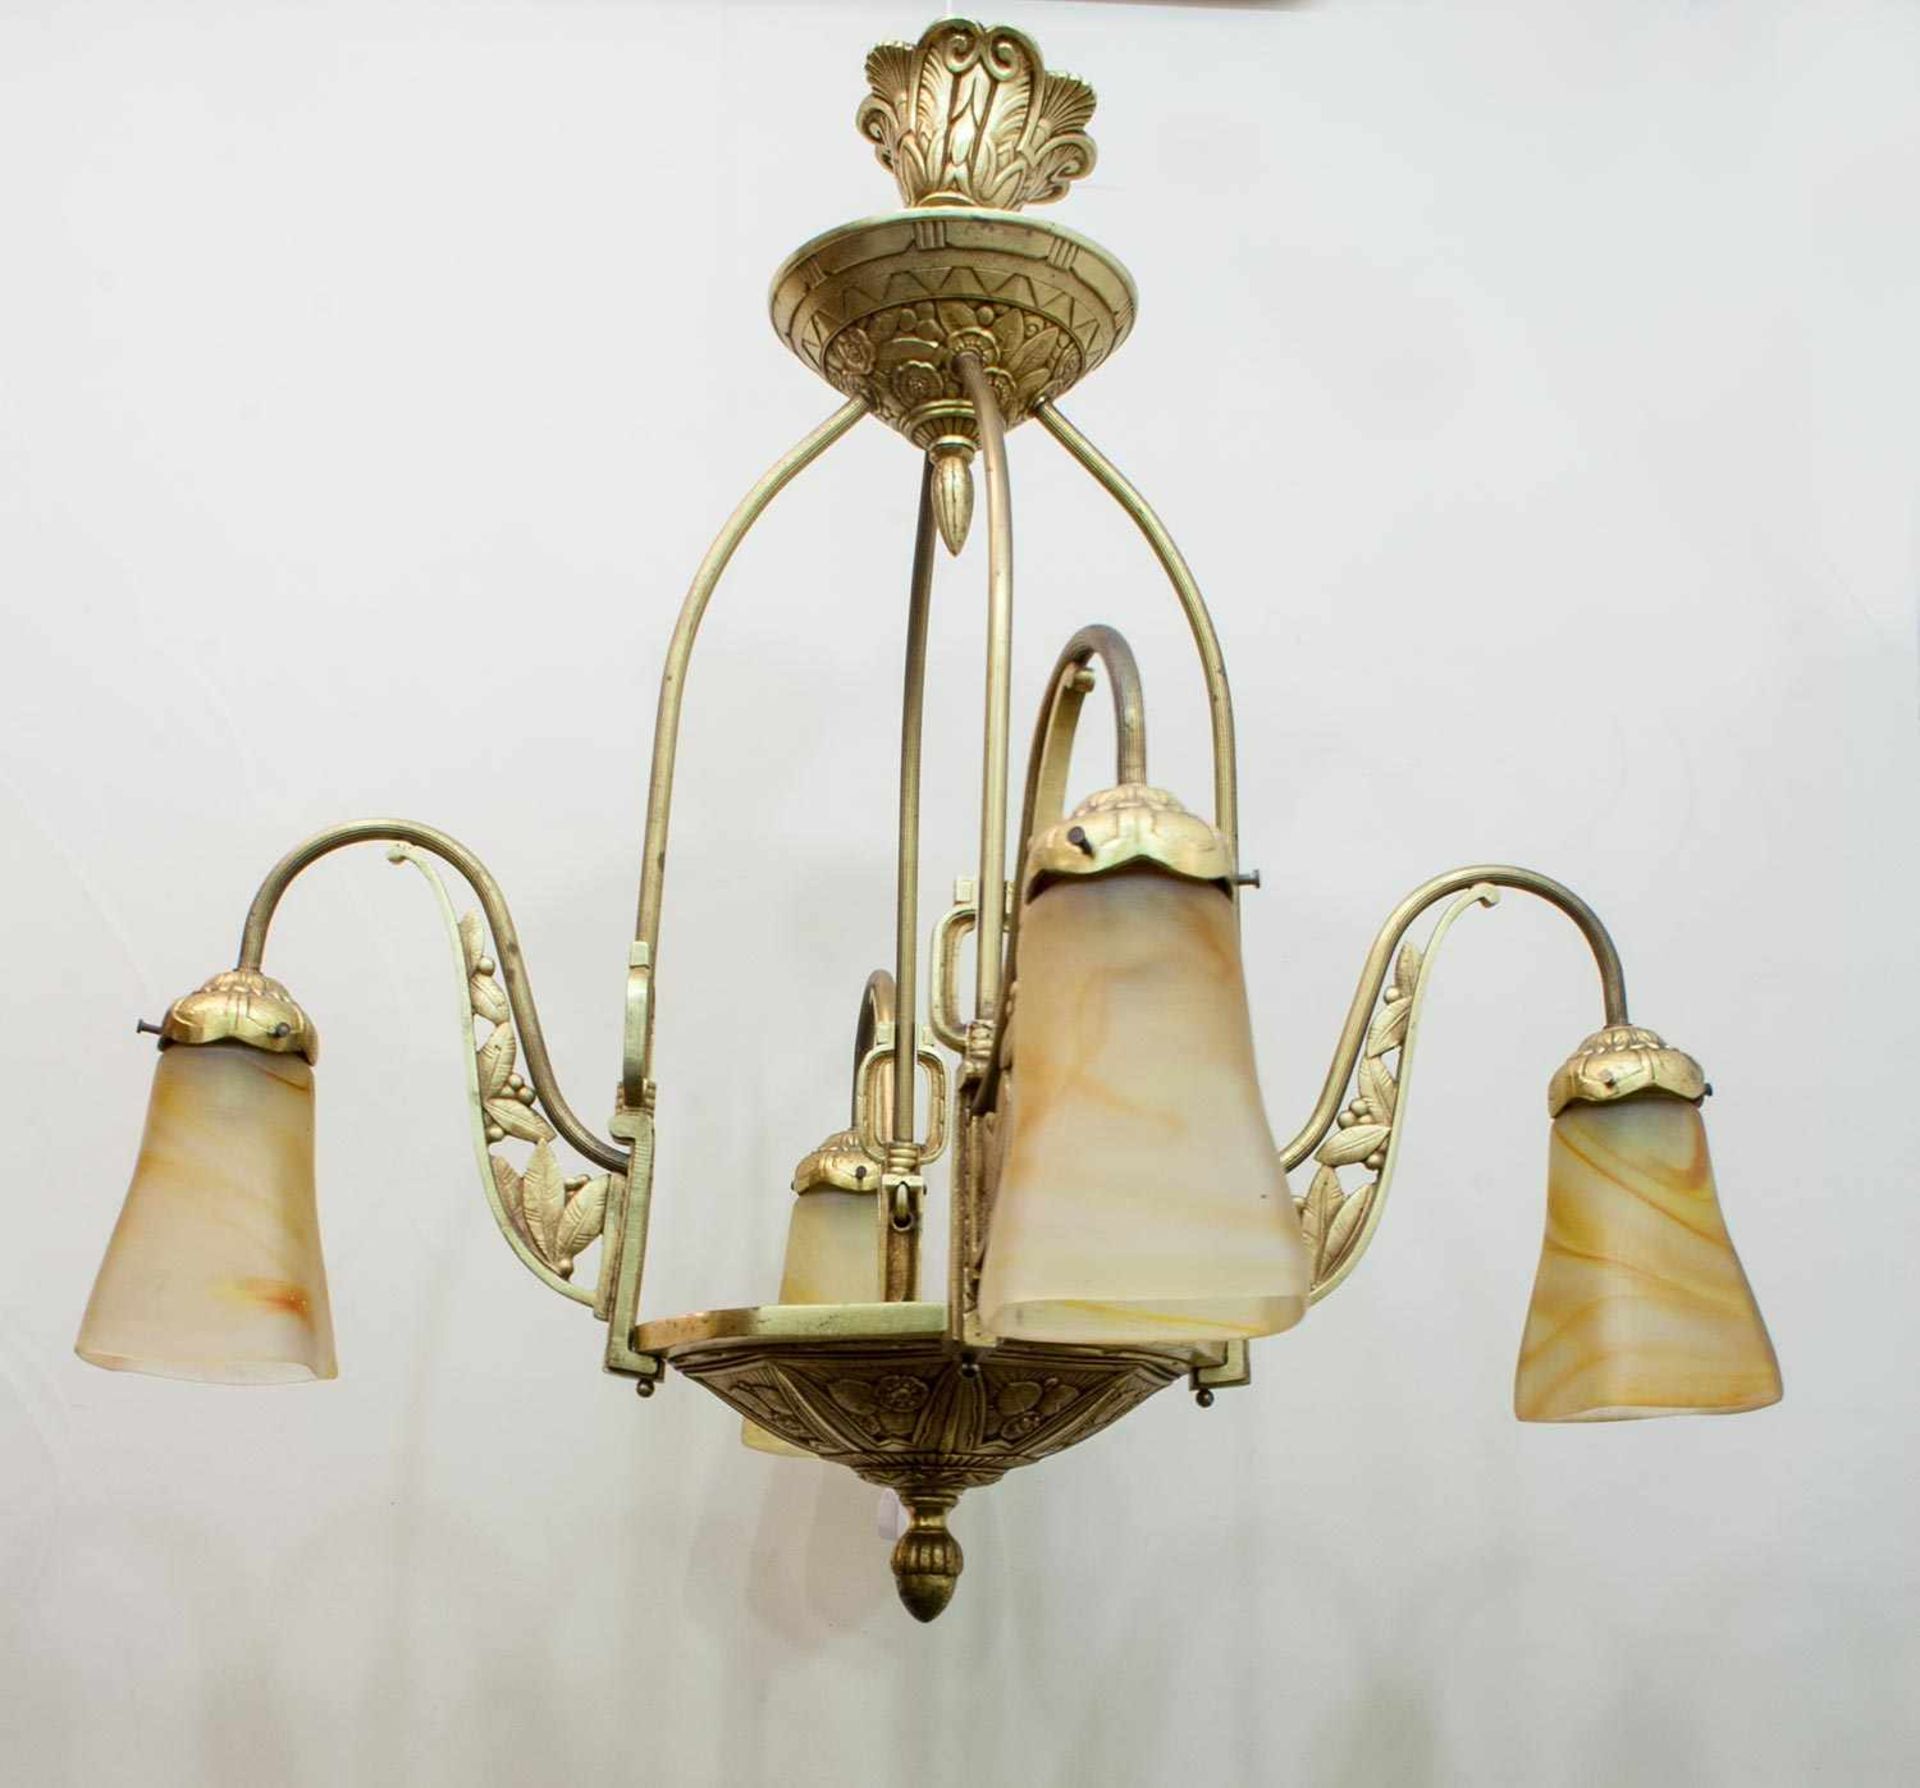 Jugendstil - Deckenlampe Frankreich um 1910, Messing, feuervergoldet, pàtes-de-verre Gläser, - Bild 2 aus 2